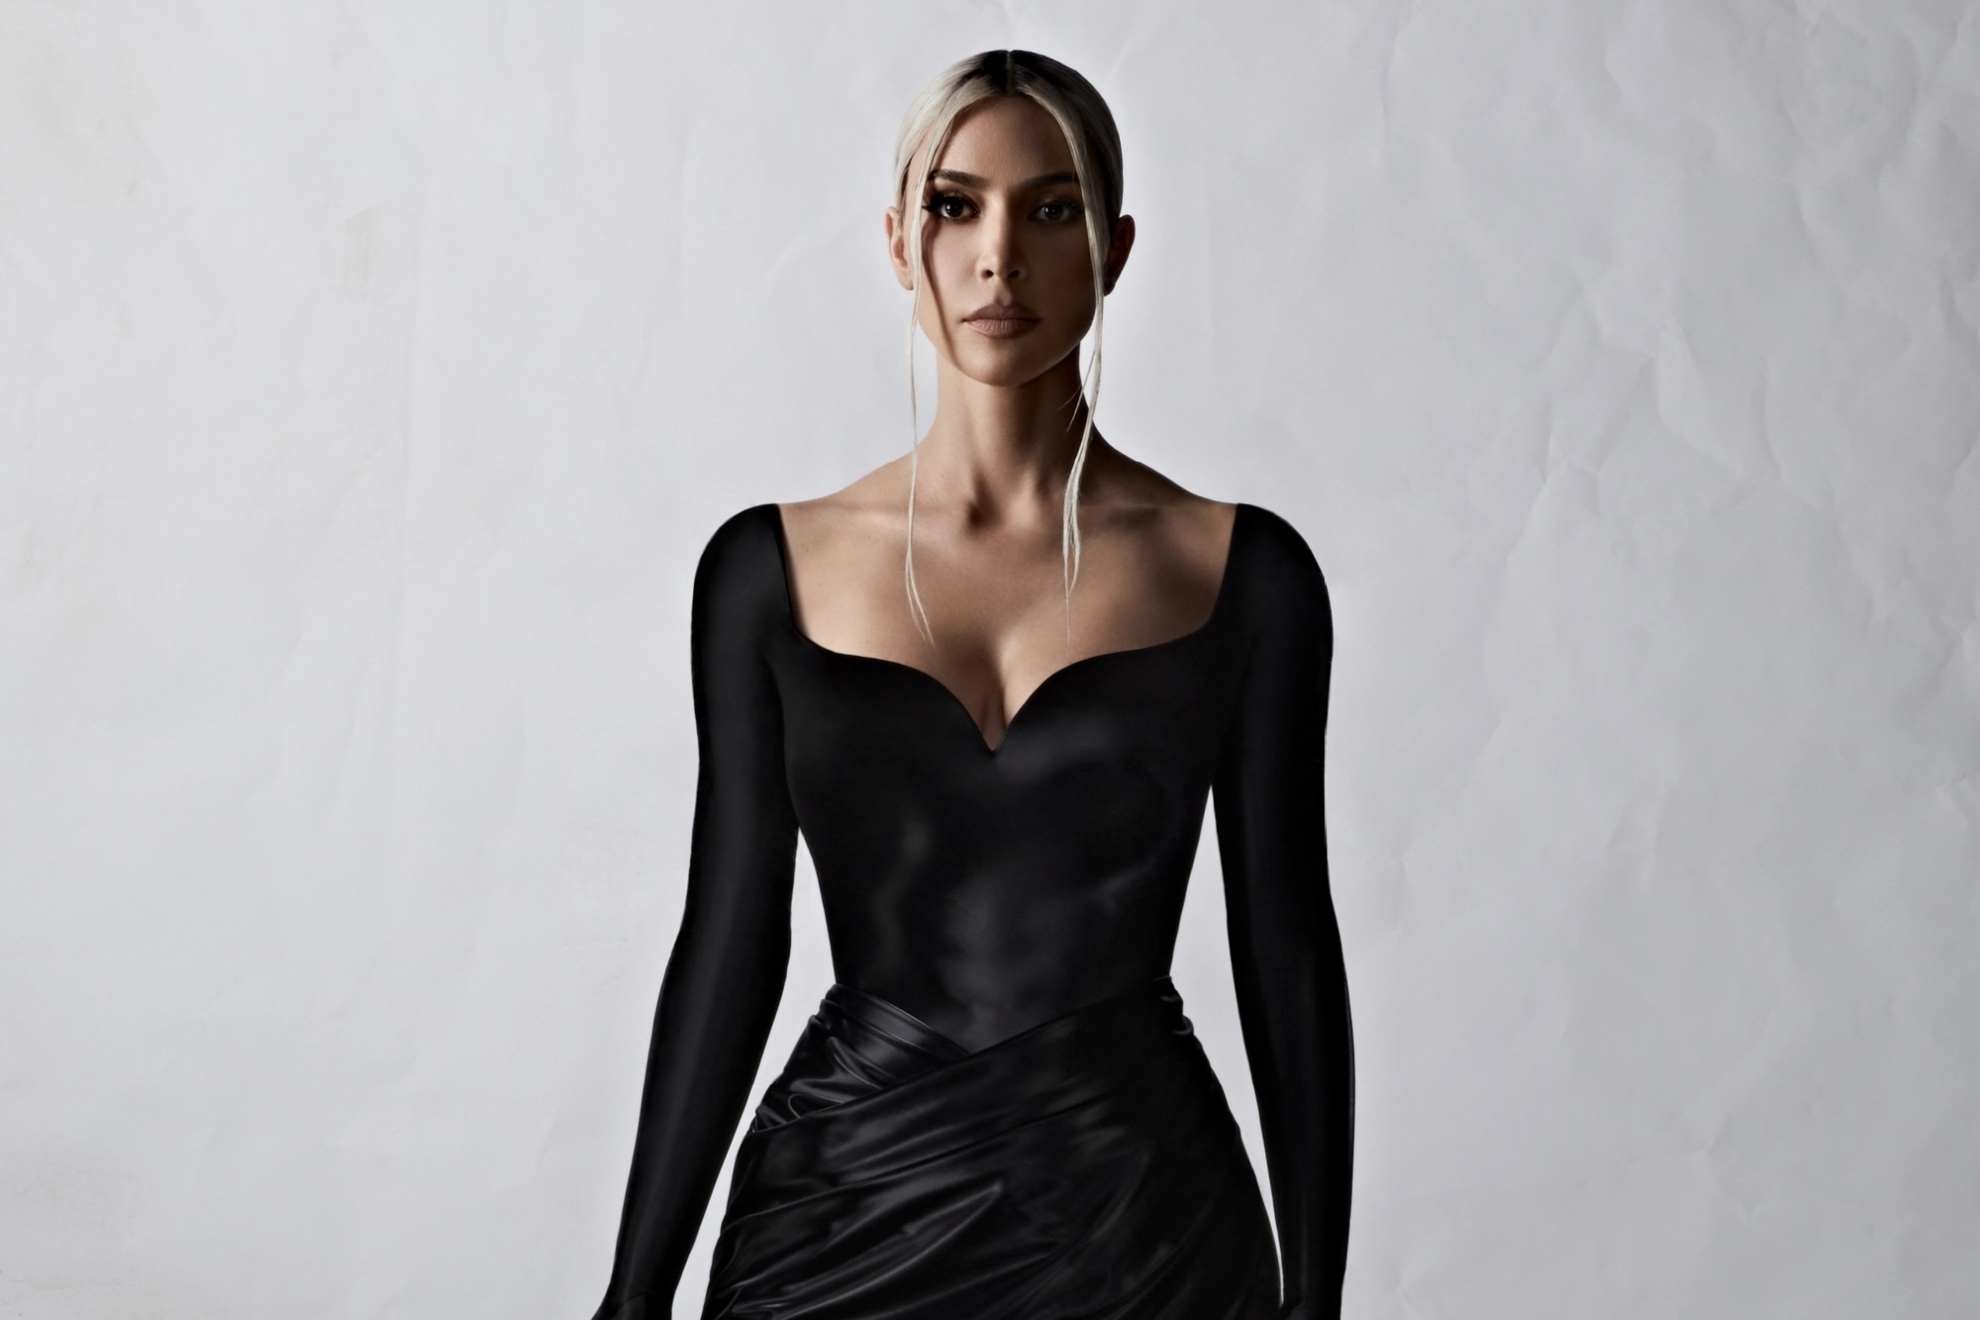 Kim Kardashian sporting Balenciaga couture